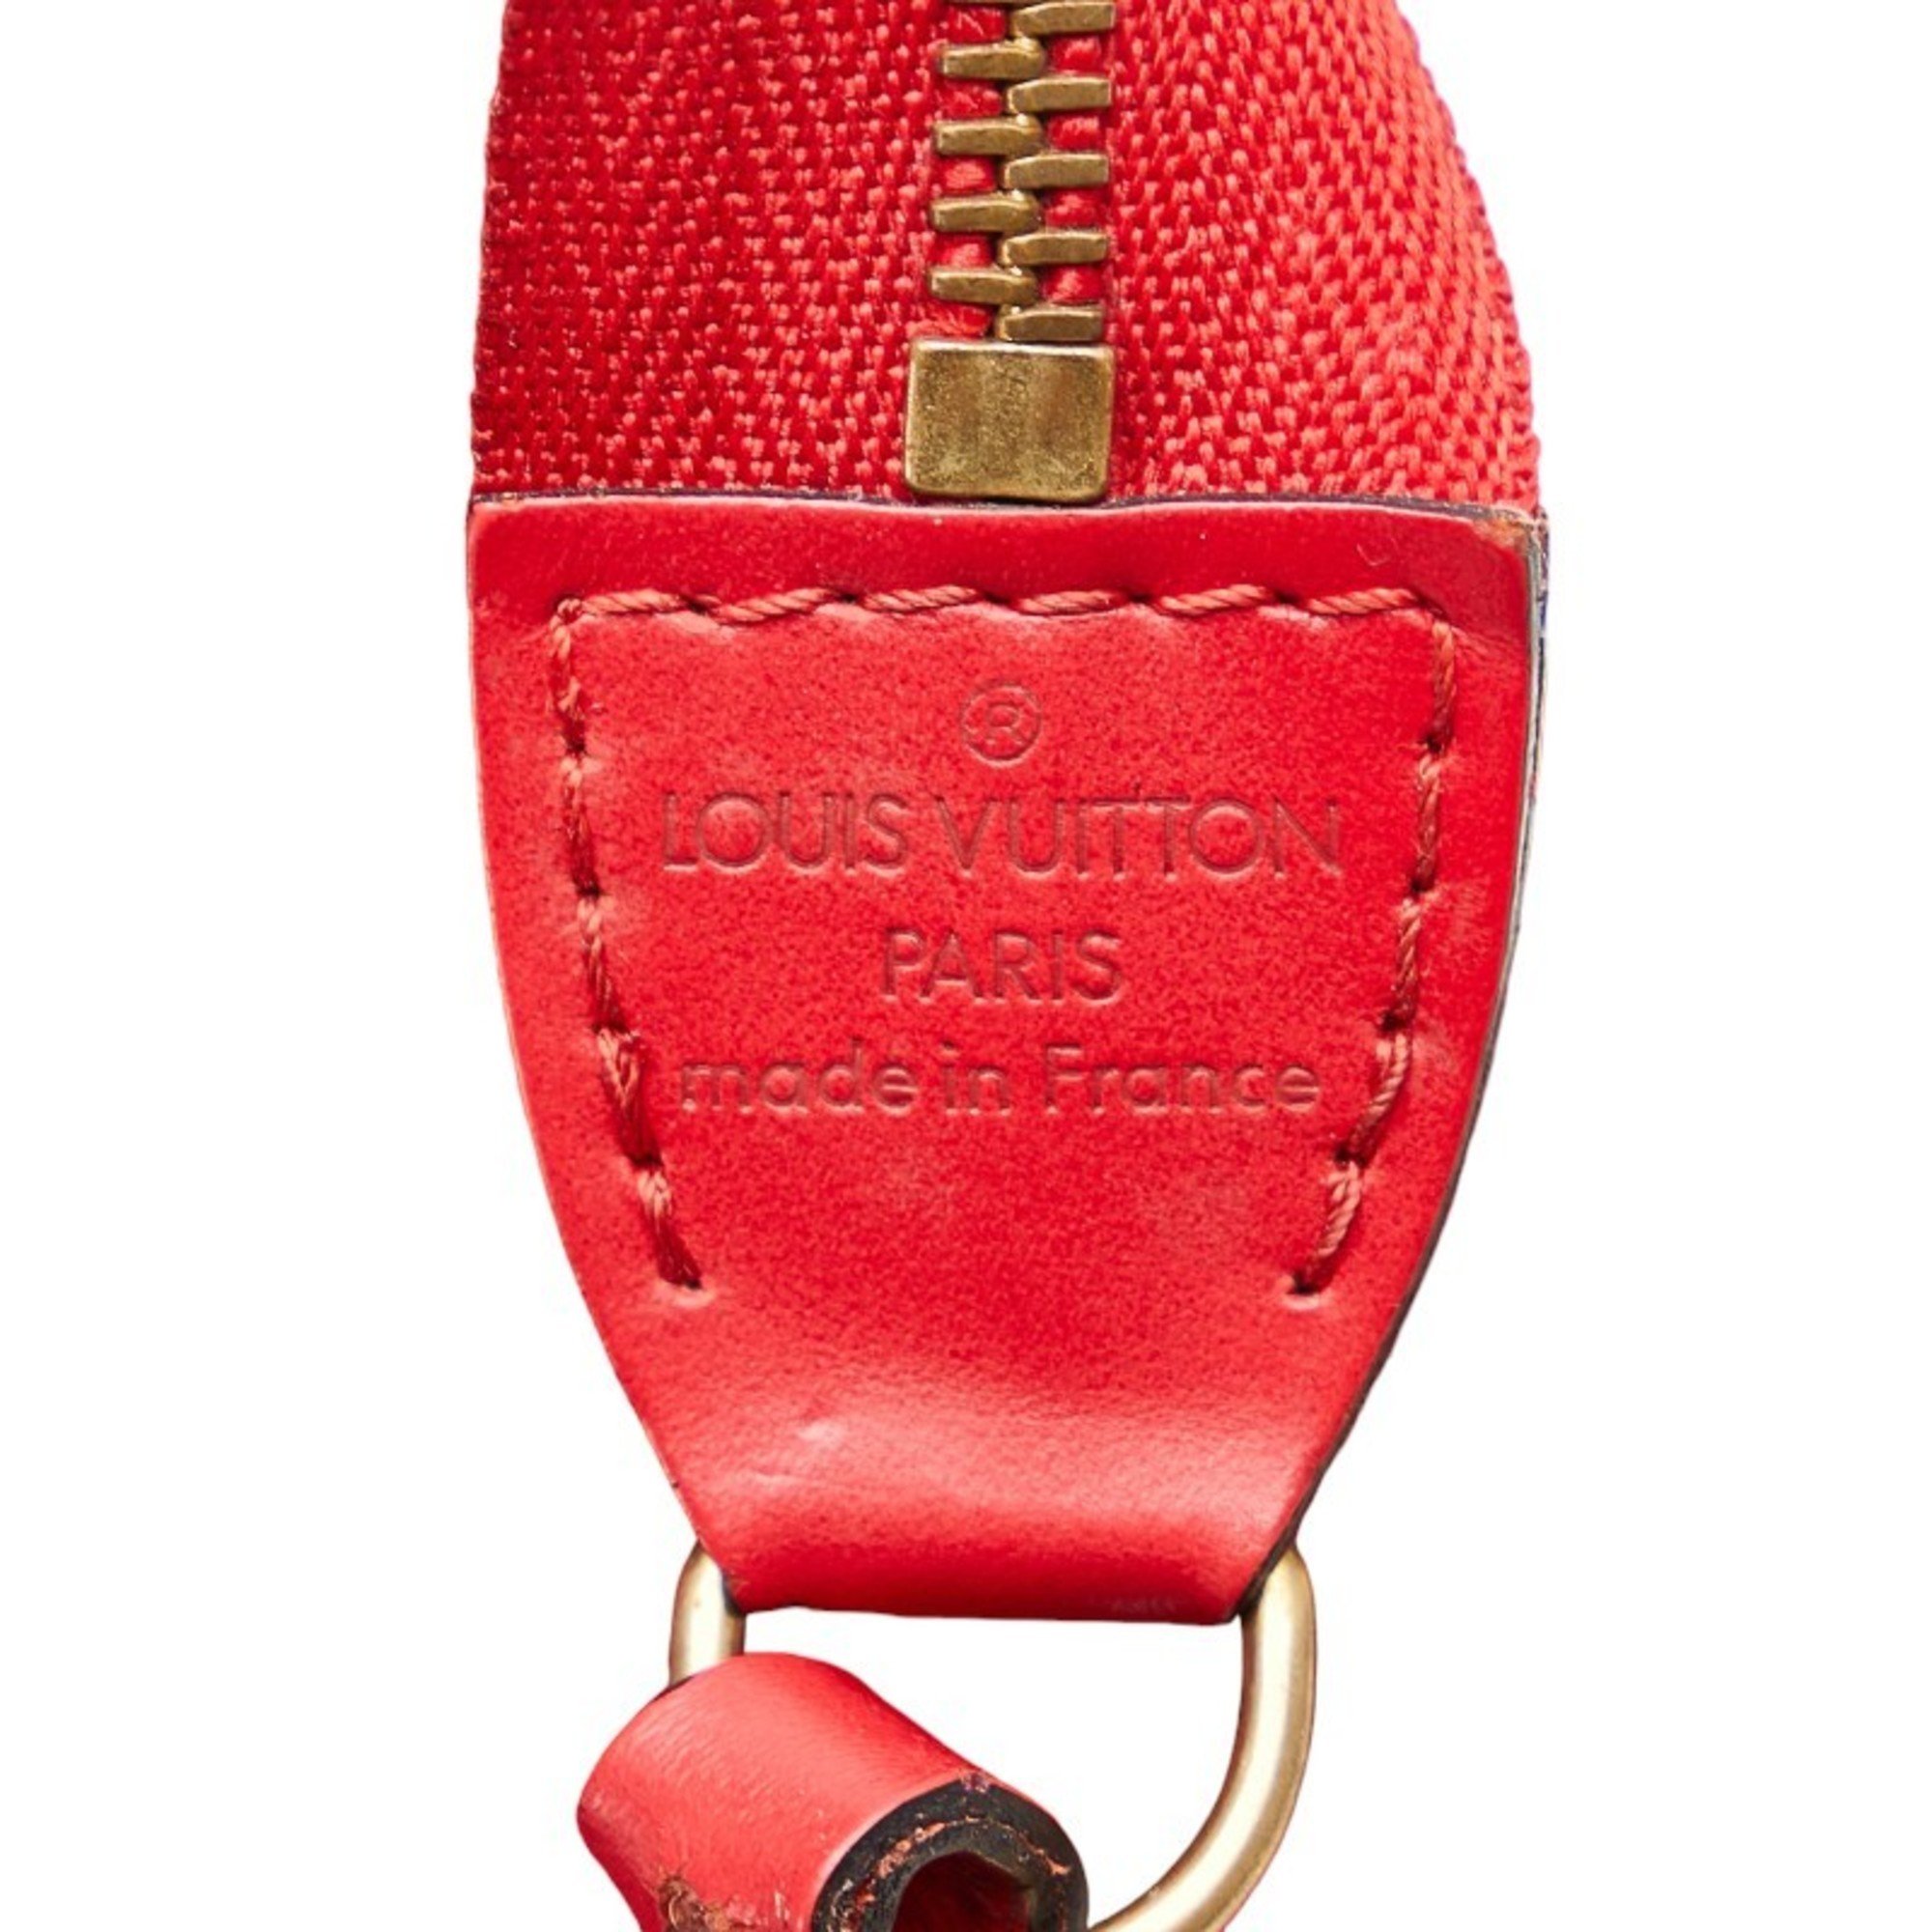 Louis Vuitton Epi Pochette Accessory Handbag Pouch M52957 Castilian Red Leather Women's LOUIS VUITTON